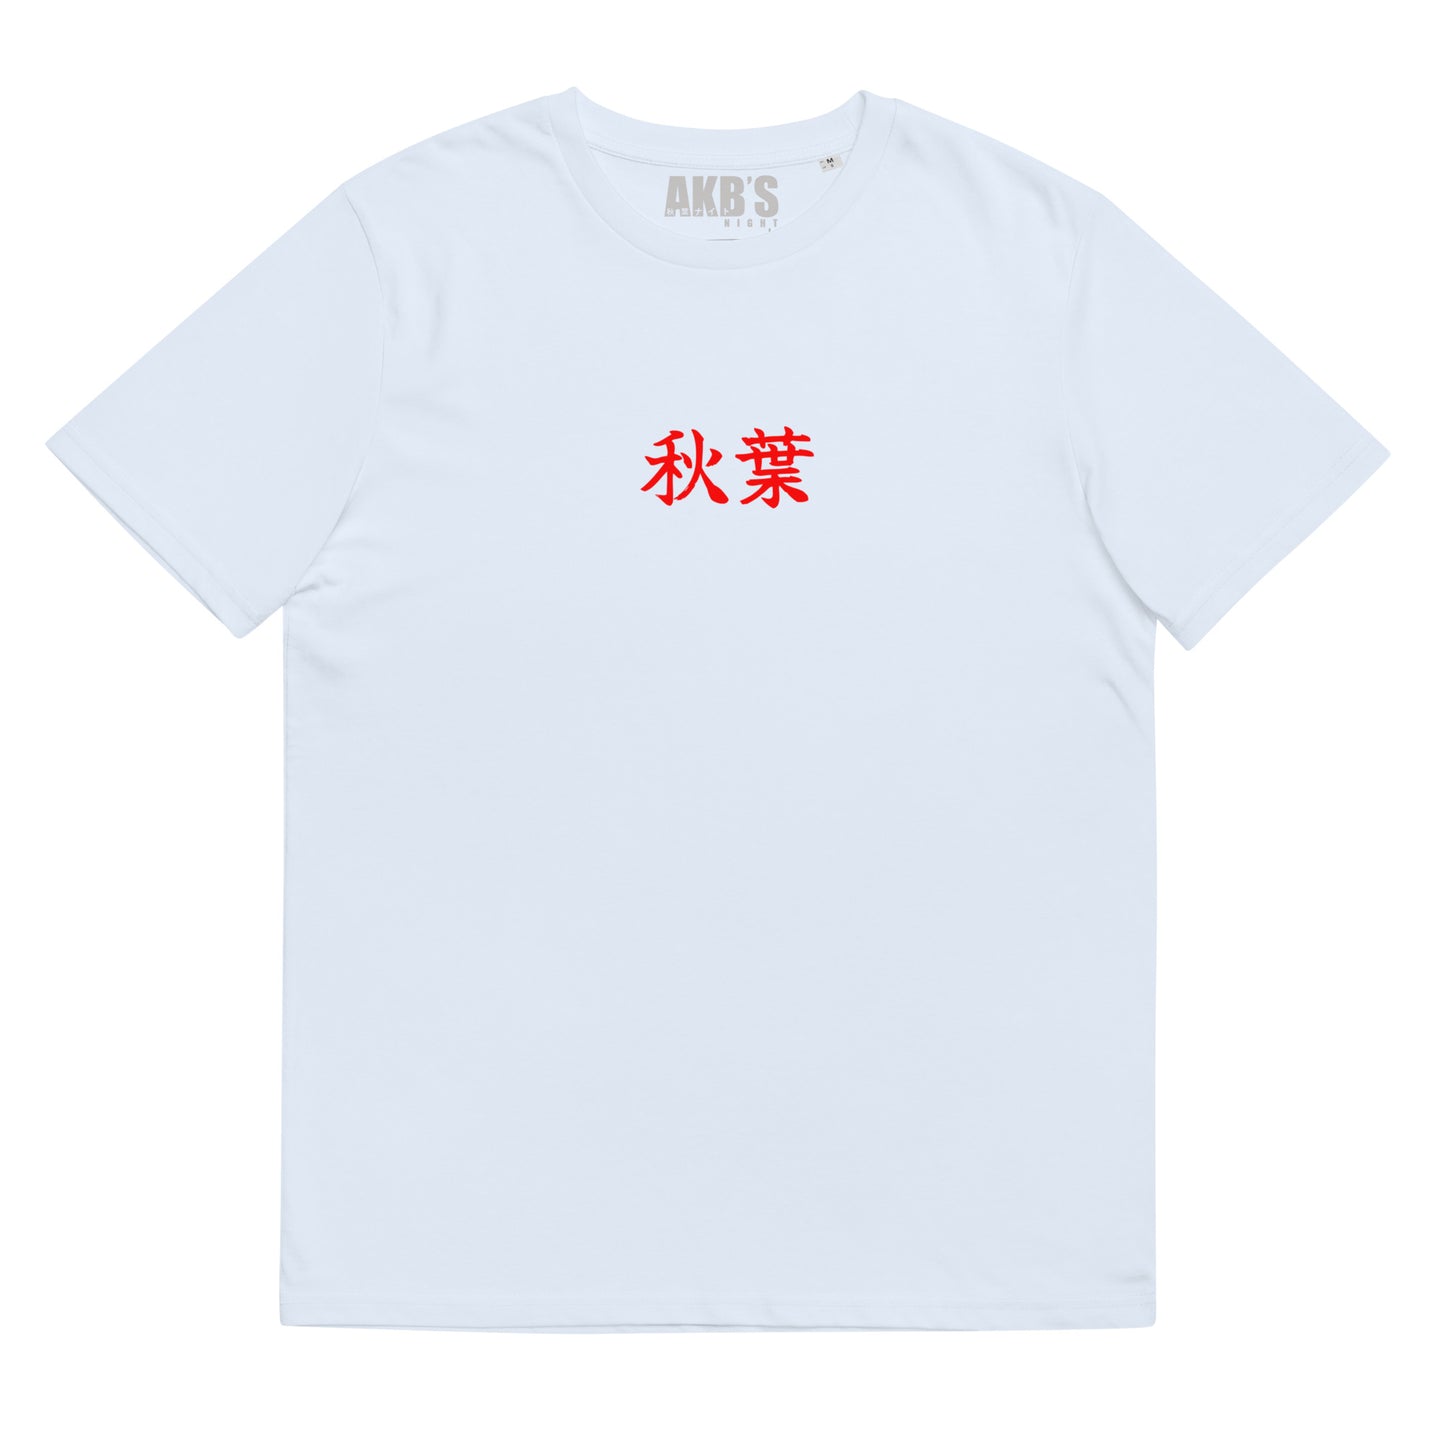 Camiseta Nakama